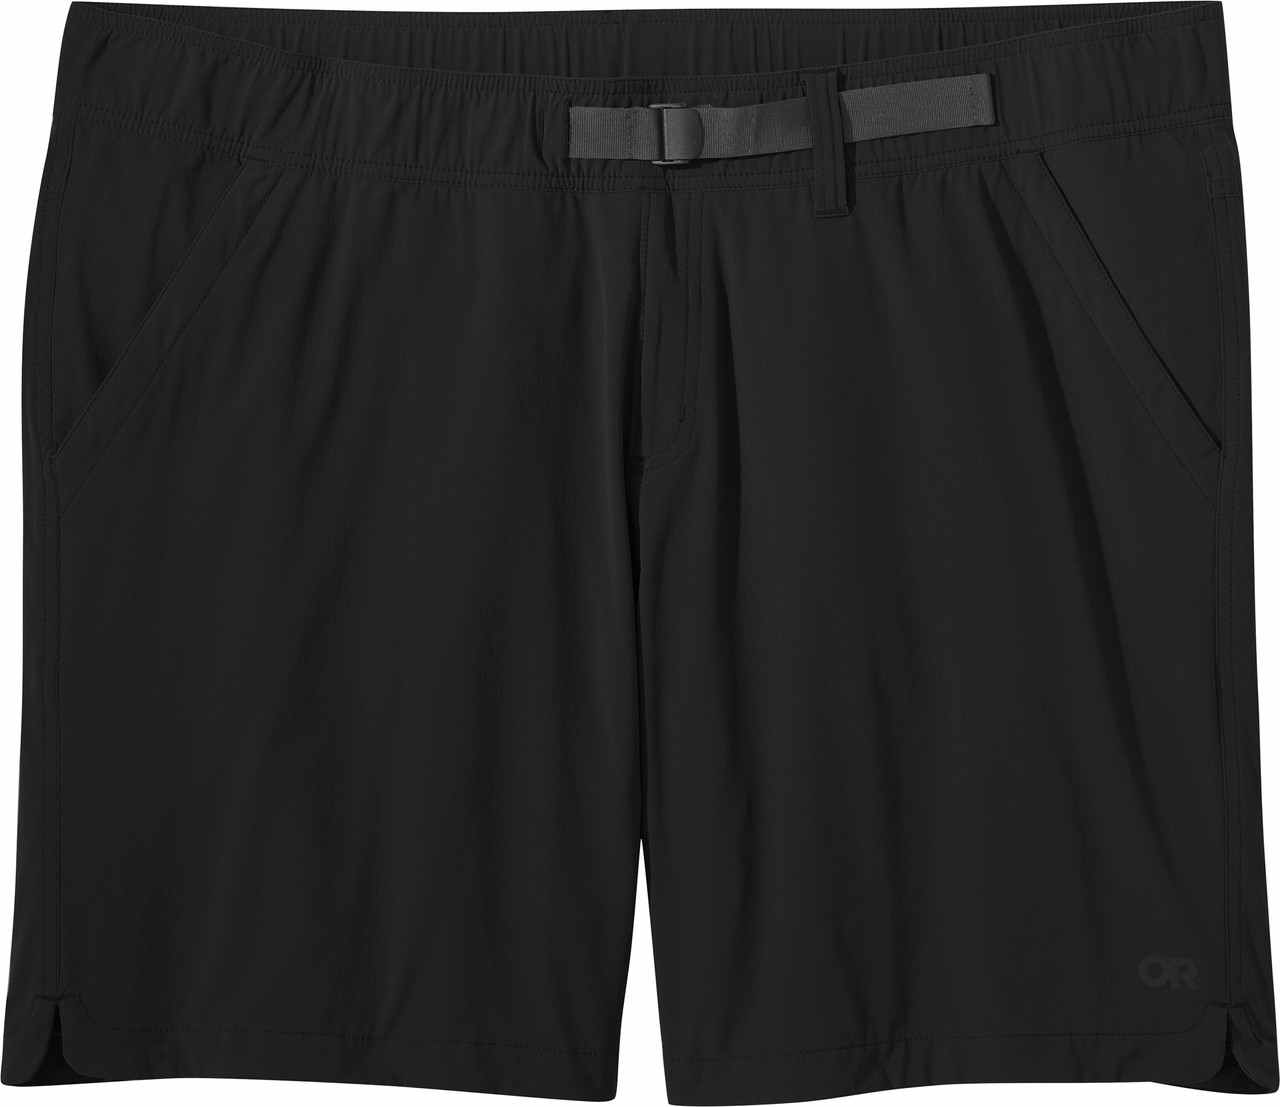 Ferrosi 9" Plus Shorts Black